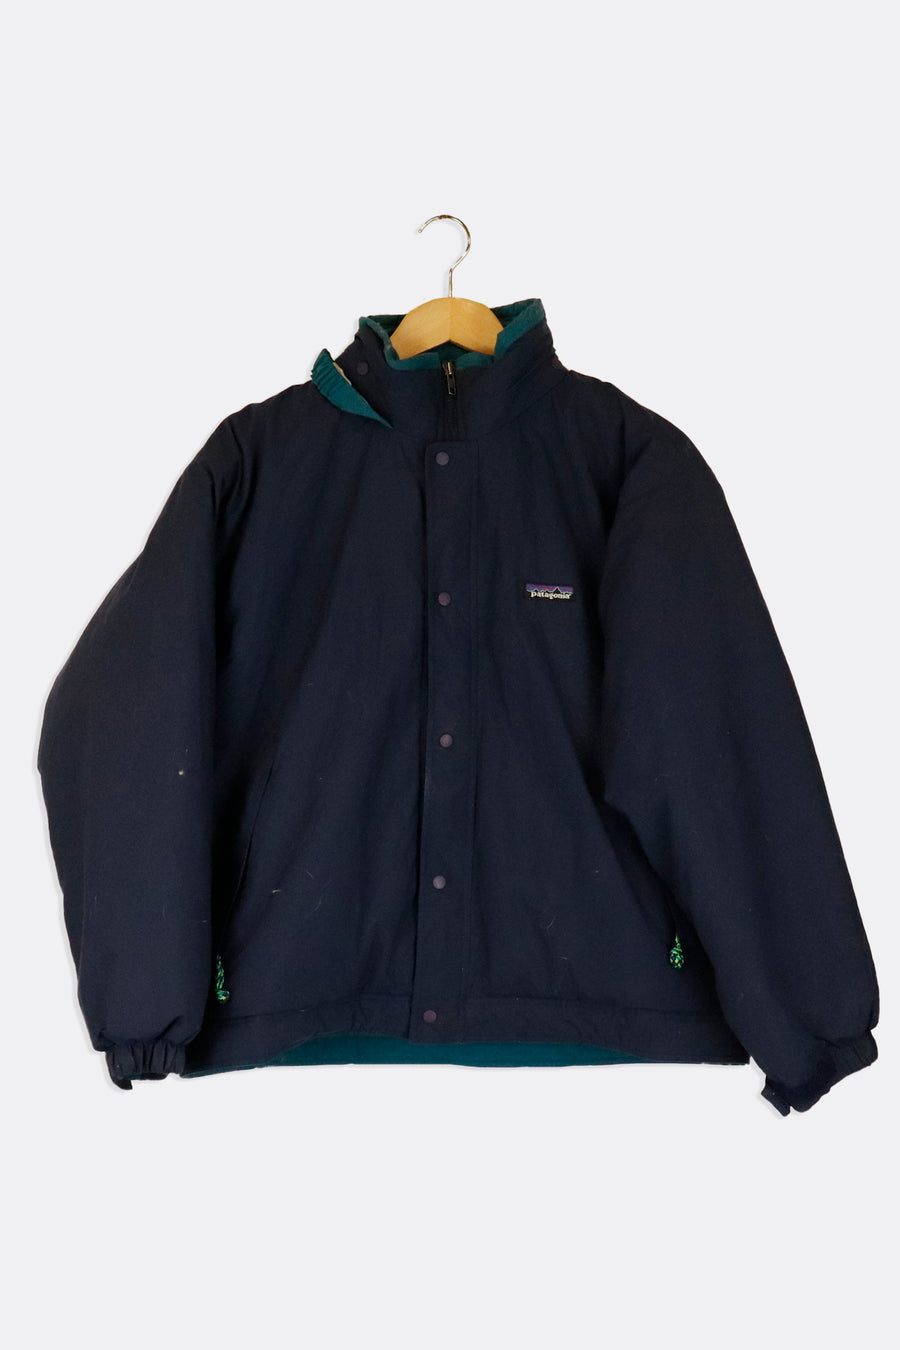 Vintage Patagonia Full Zip Removable Hood Full Zip Winter Jacket